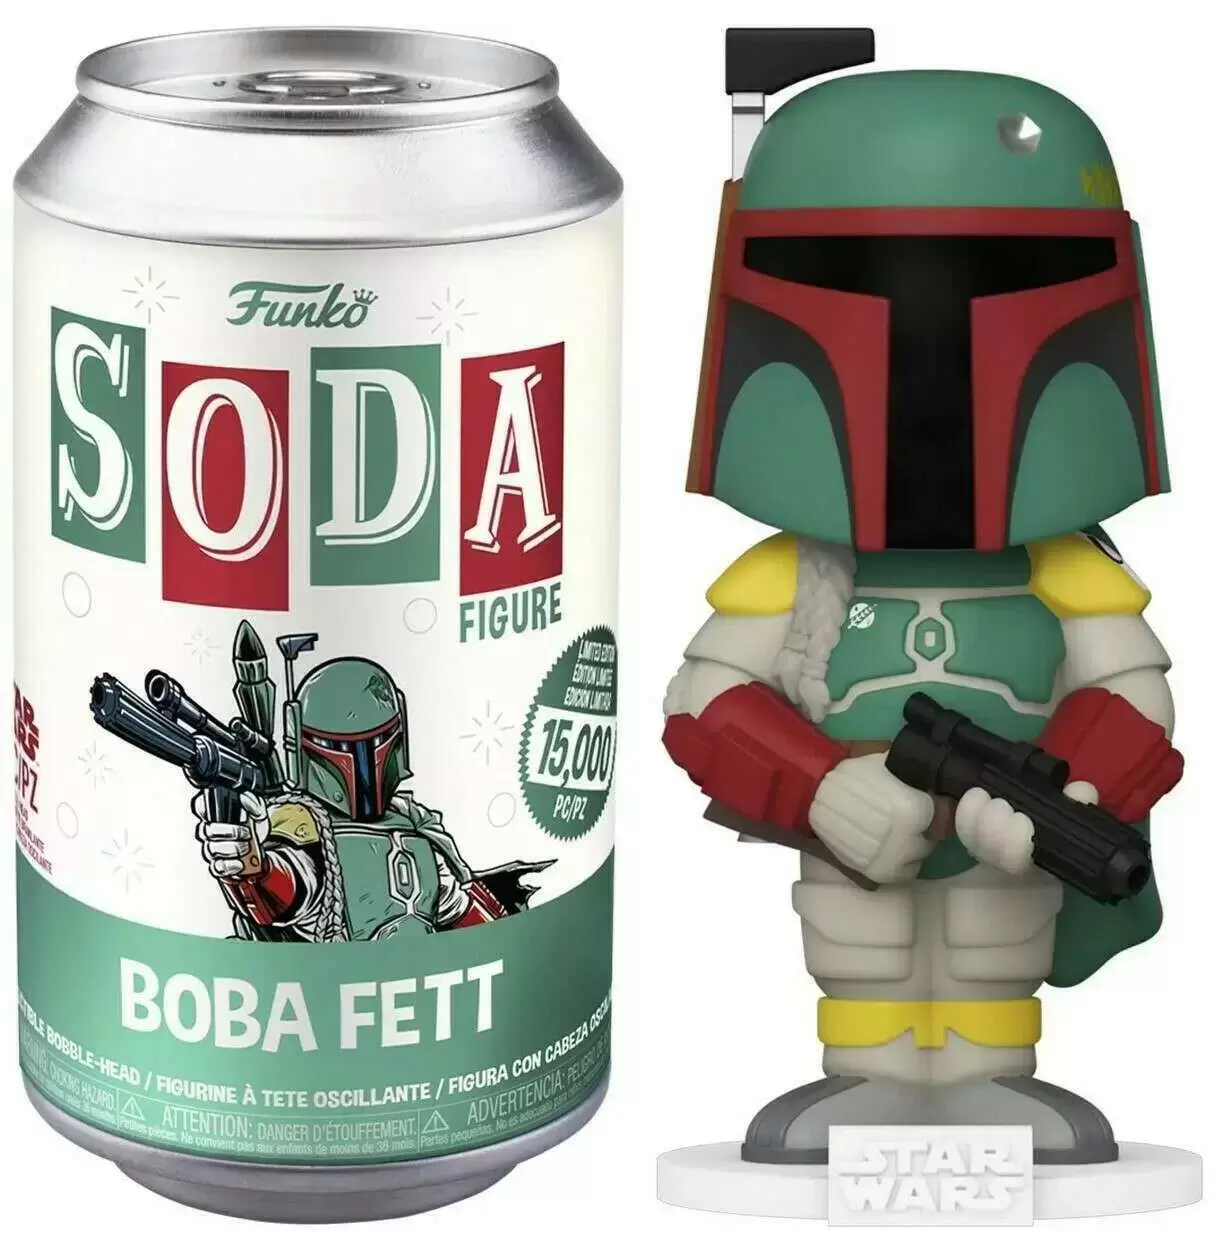 Vinyl Soda! - Star Wars - Boba Fett